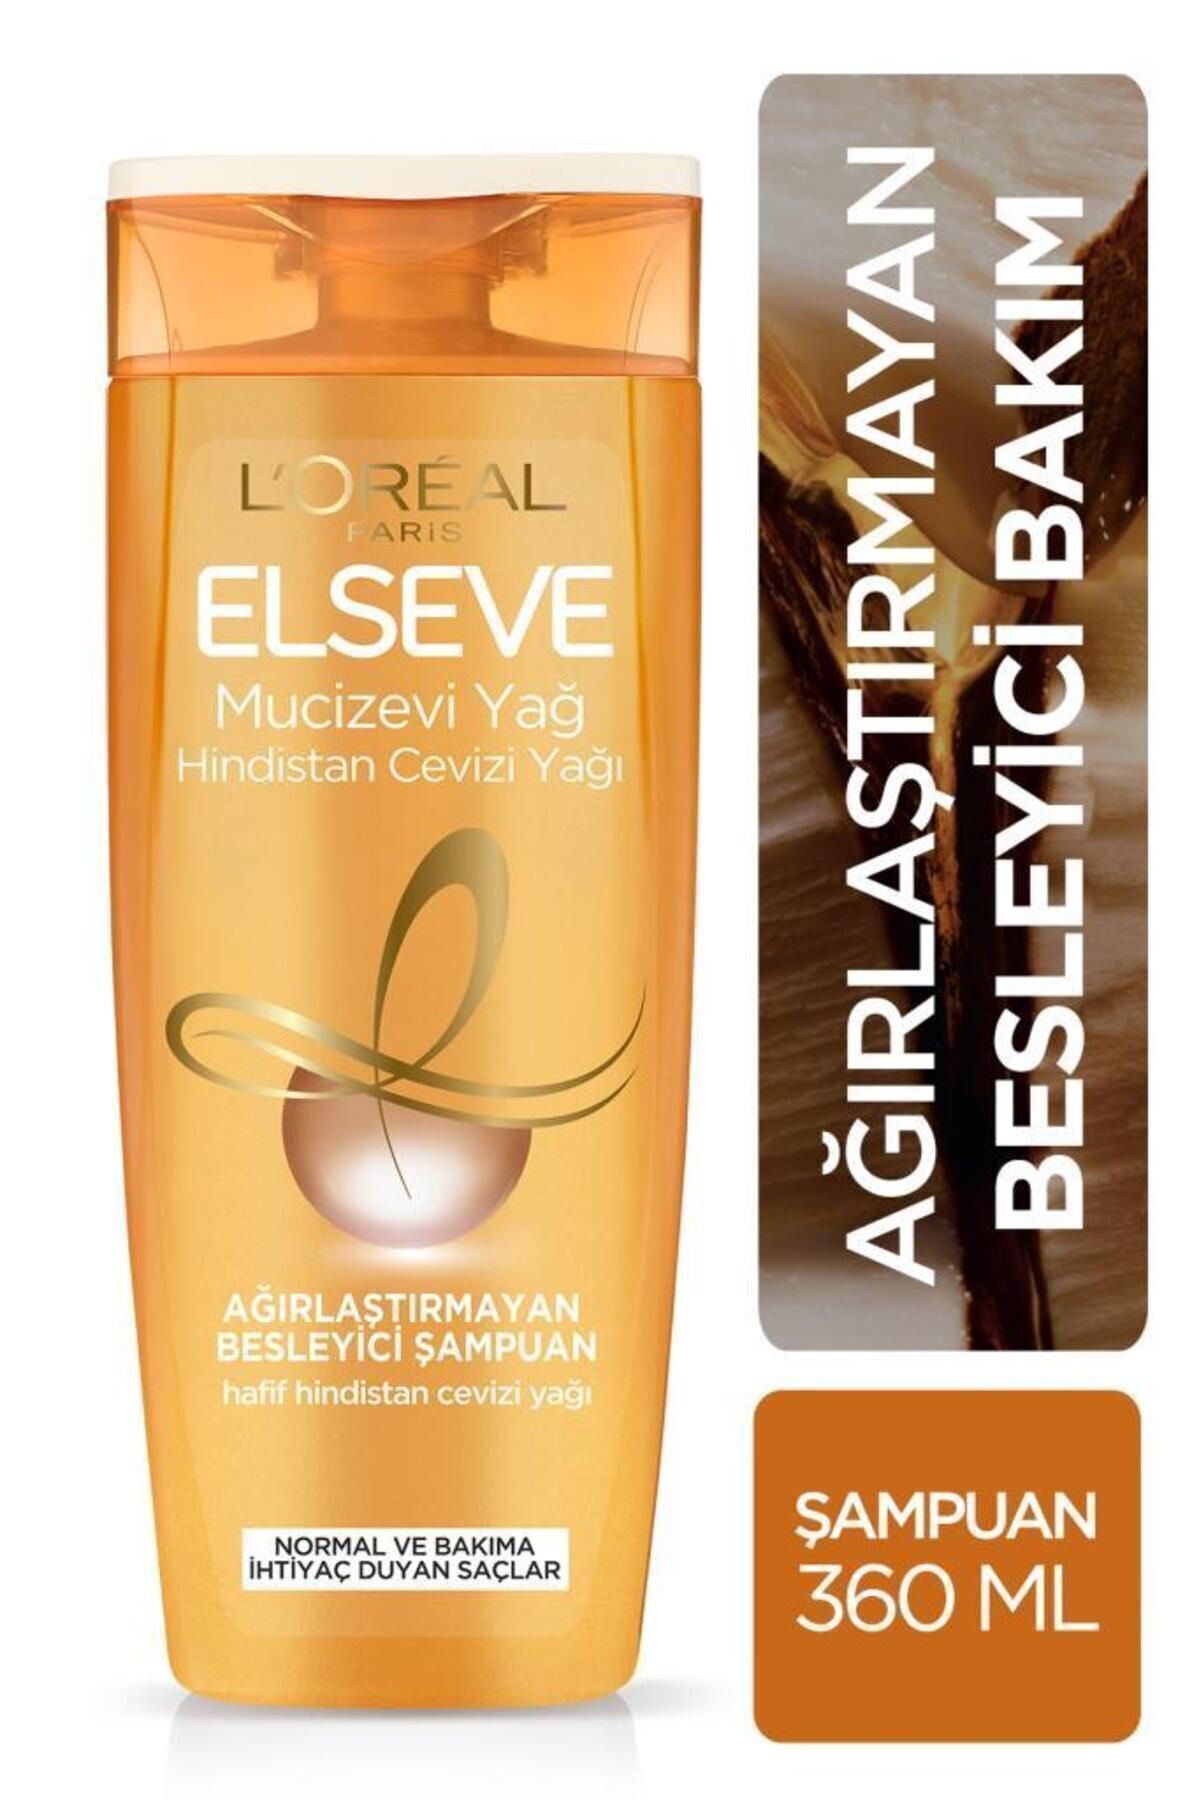 Elseve L'oréal Paris Mucizevi Hindistan Cevizi Yağı Ağırlaştırmayan Besleyici Şampuan 360 ml